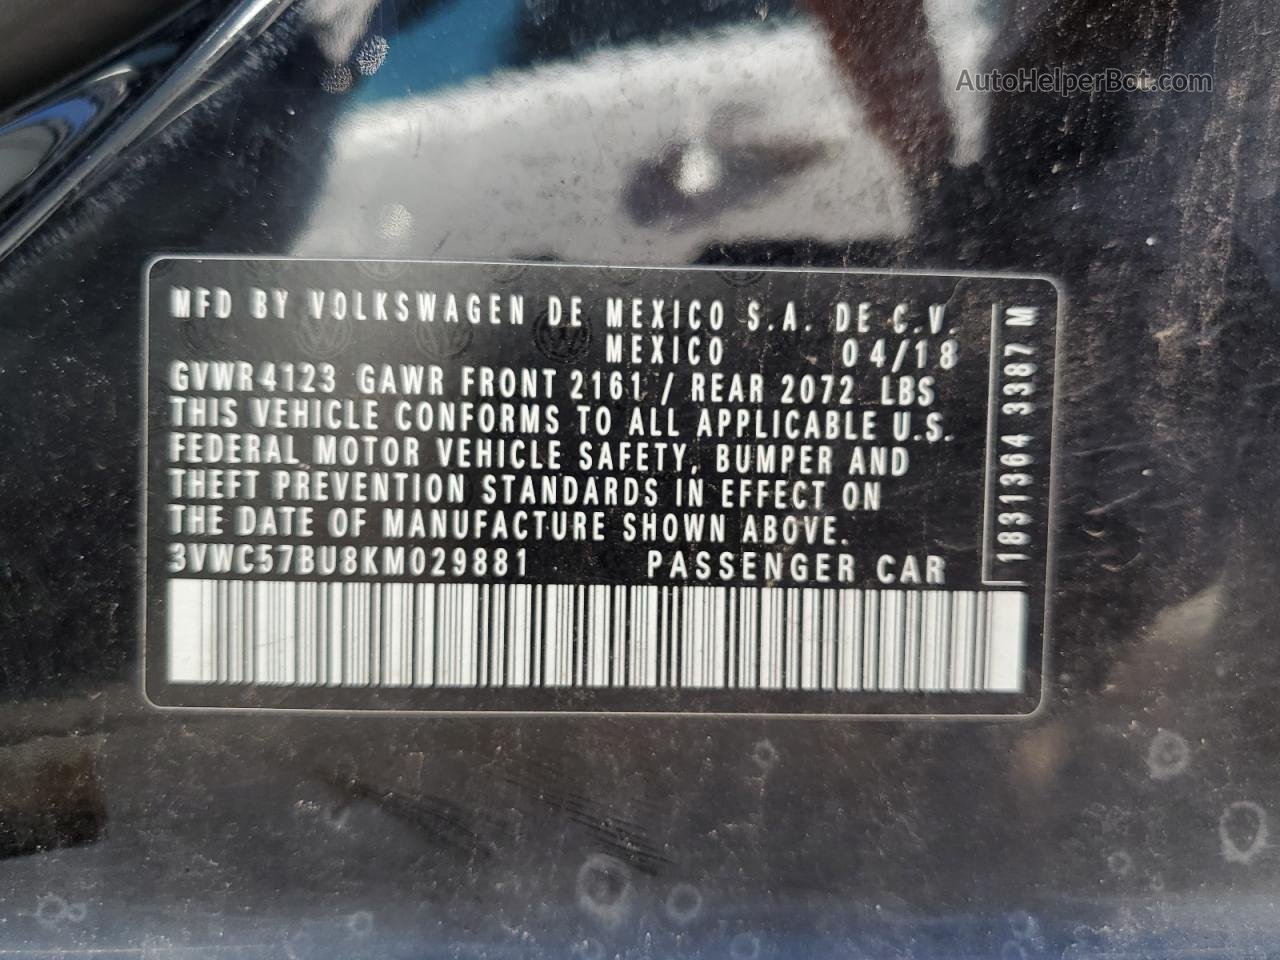 2019 Volkswagen Jetta S Black vin: 3VWC57BU8KM029881